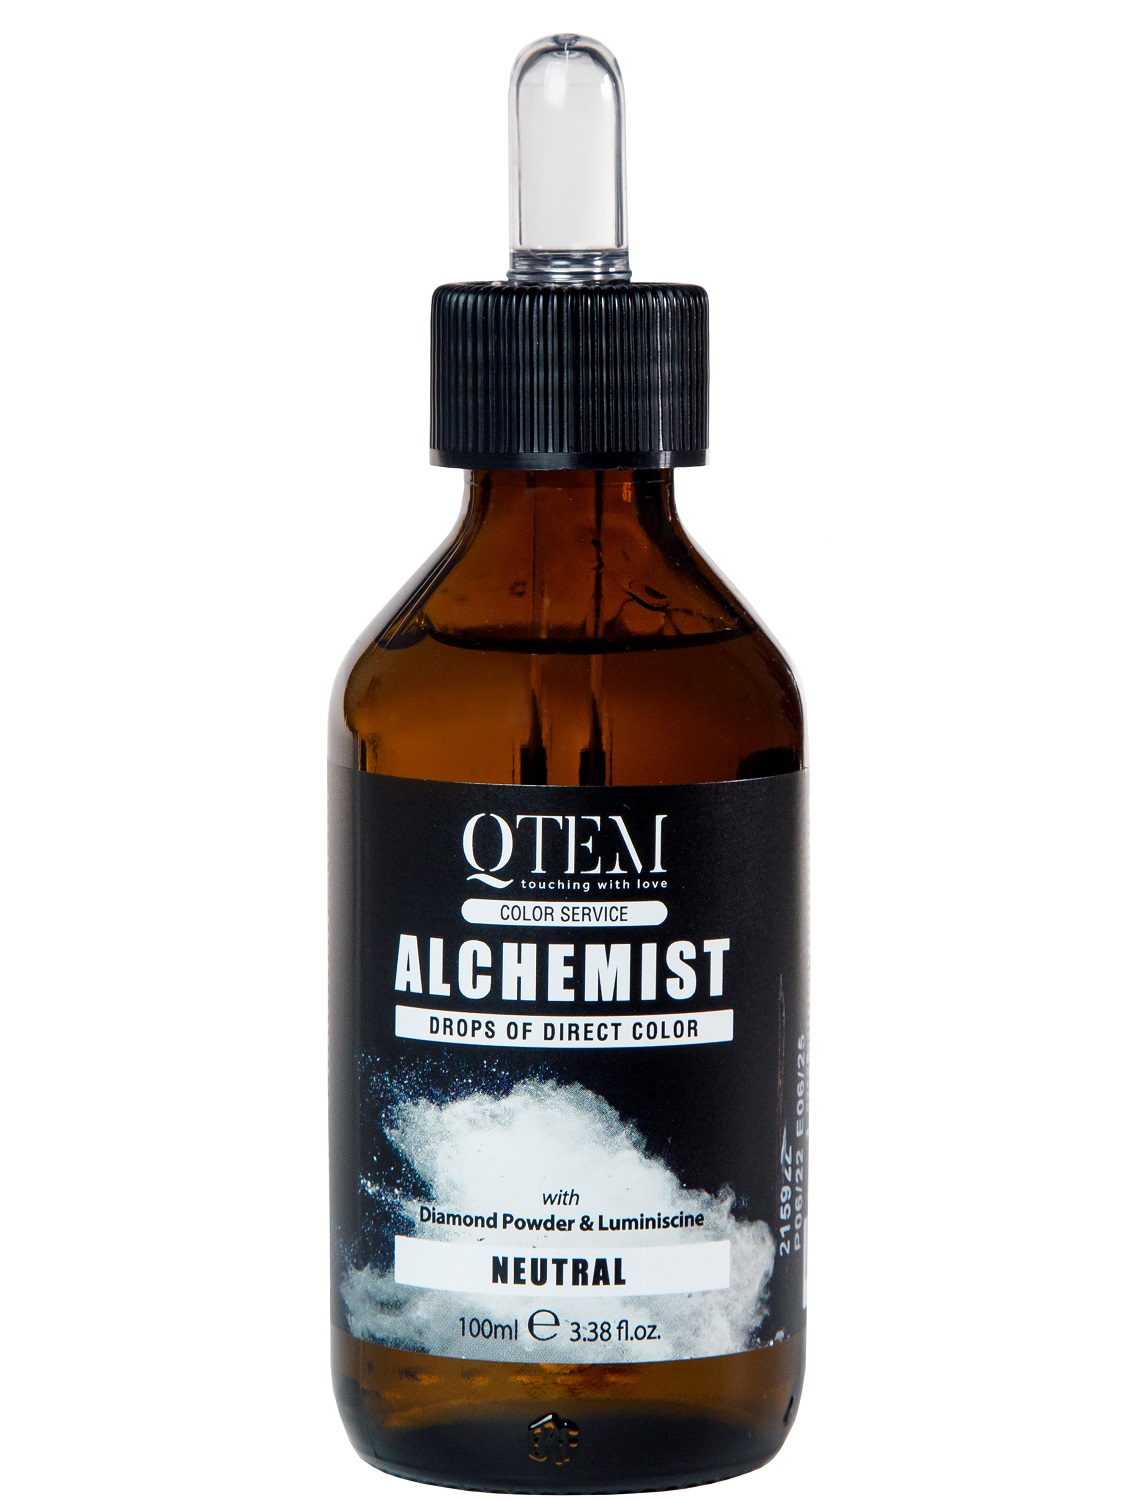 Qtem Капли прямого пигмента Alchemist, 100 мл (Qtem, Color Service) цена и фото